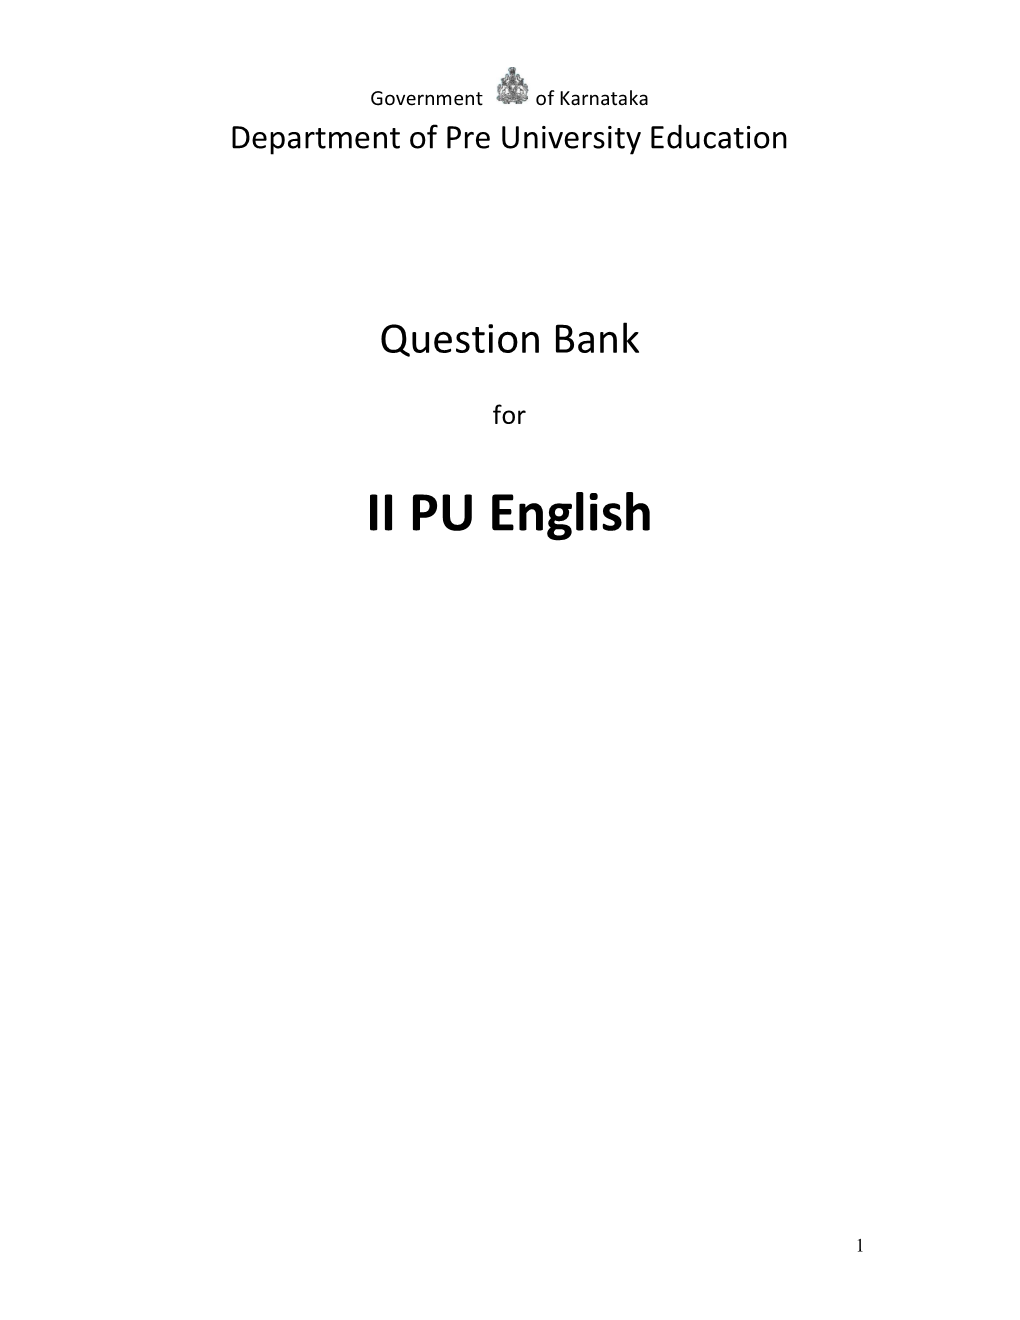 II PU English